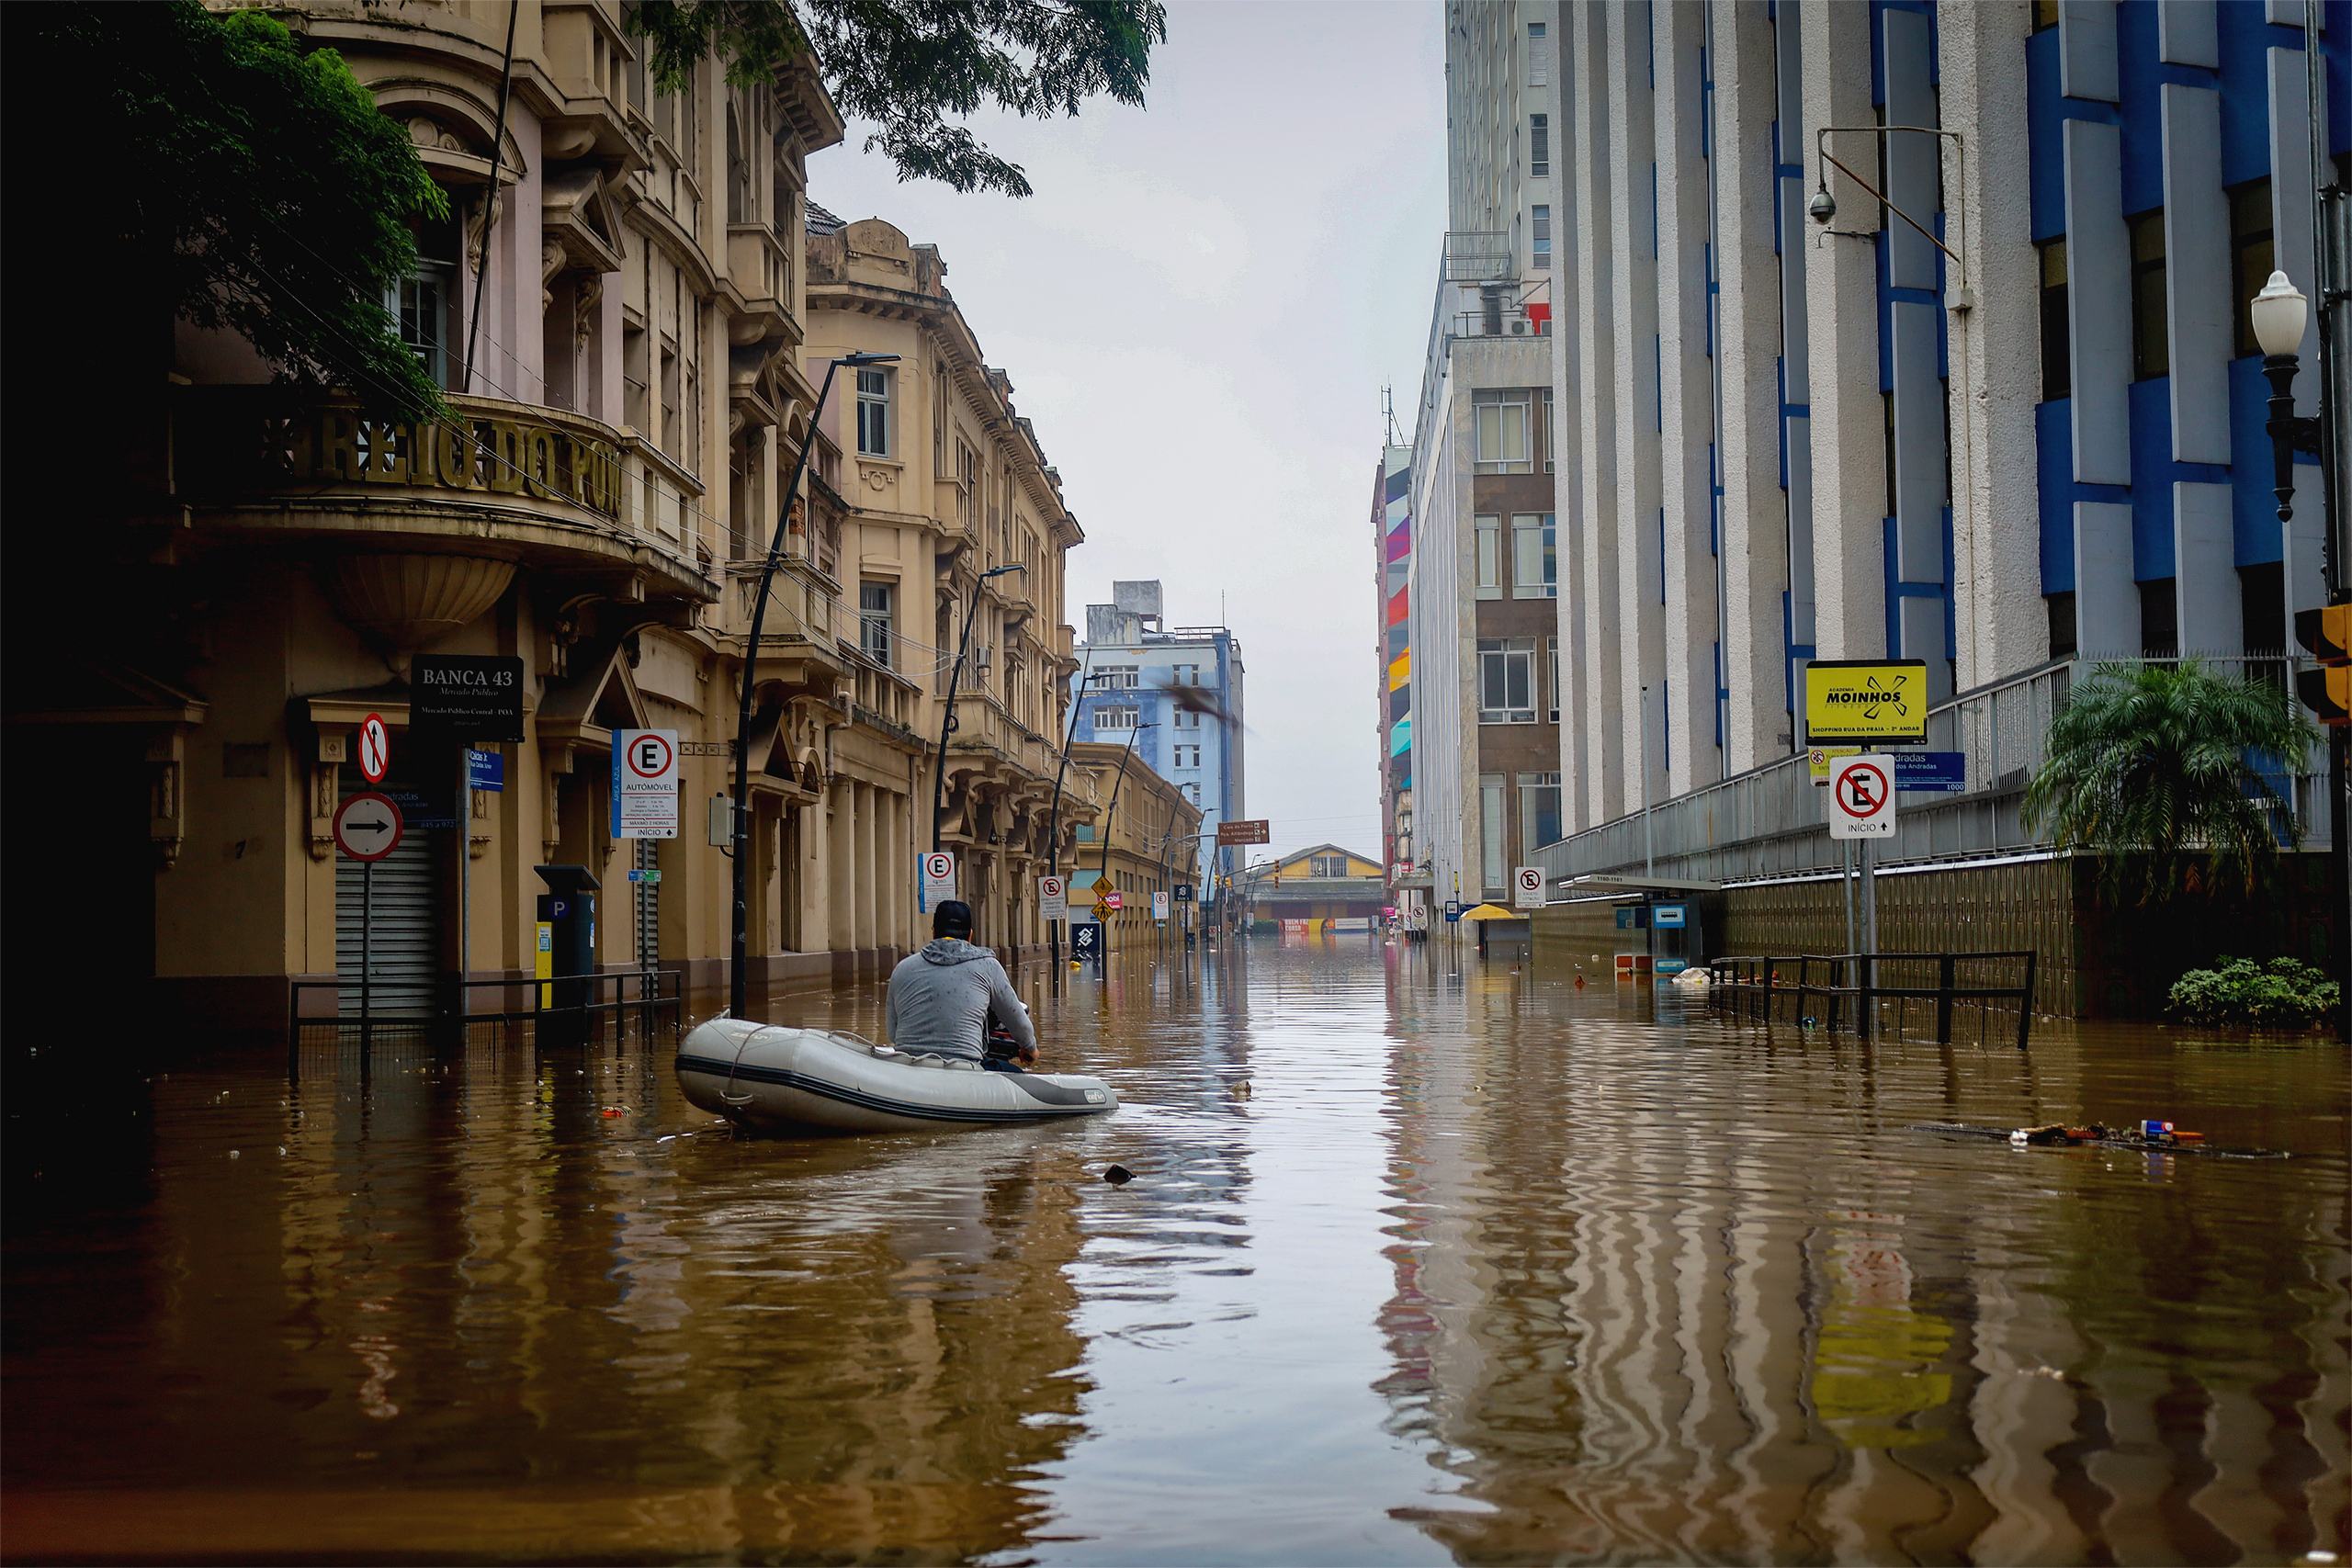 <p>Un hombre recorre las calles del centro histórico de Porto Alegre, Brasil. La ciudad ha sufrido las peores inundaciones de su historia, con agua a más de dos metros sobre el nivel del suelo (Imagen: <a href="https://www.flickr.com/photos/midianinja/53727820655/in/album-72177720317043955/">Maí Yandara</a> / <a href="https://www.flickr.com/people/midianinja/">Mídia NINJA</a>, <a href="https://creativecommons.org/licenses/by-nc/2.0/">CC BY NC</a>)</p>